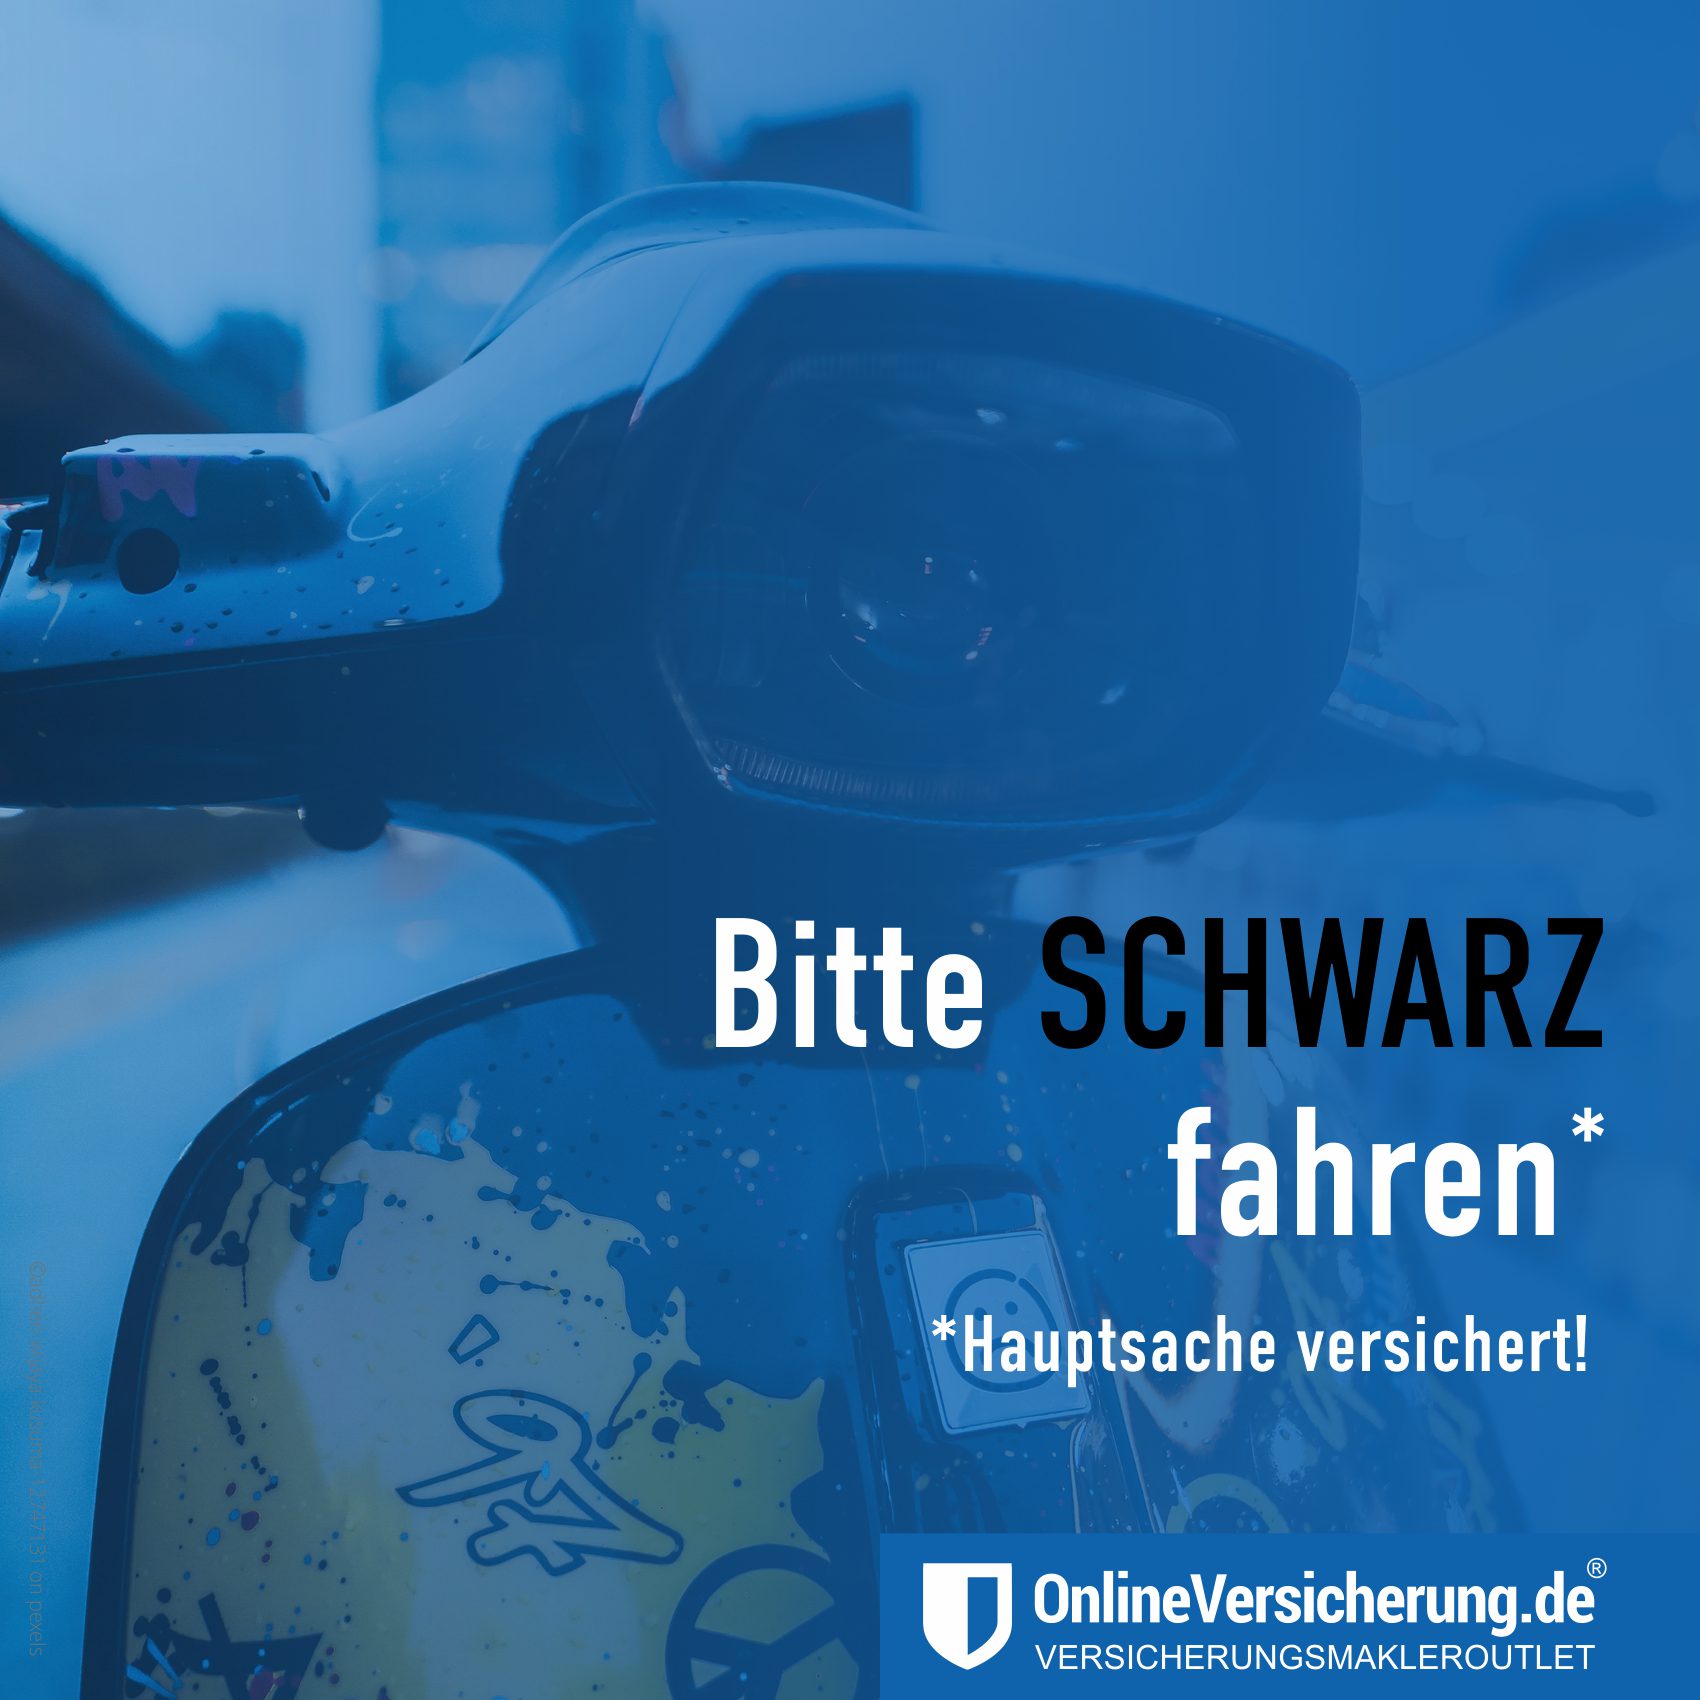 Mopedsaison beginnt am 1. März. In diesem Jahr ist es SCHWARZ. Auch für E-Scooter. Haftpflichtversicherung bei: Onlineversicherung.de